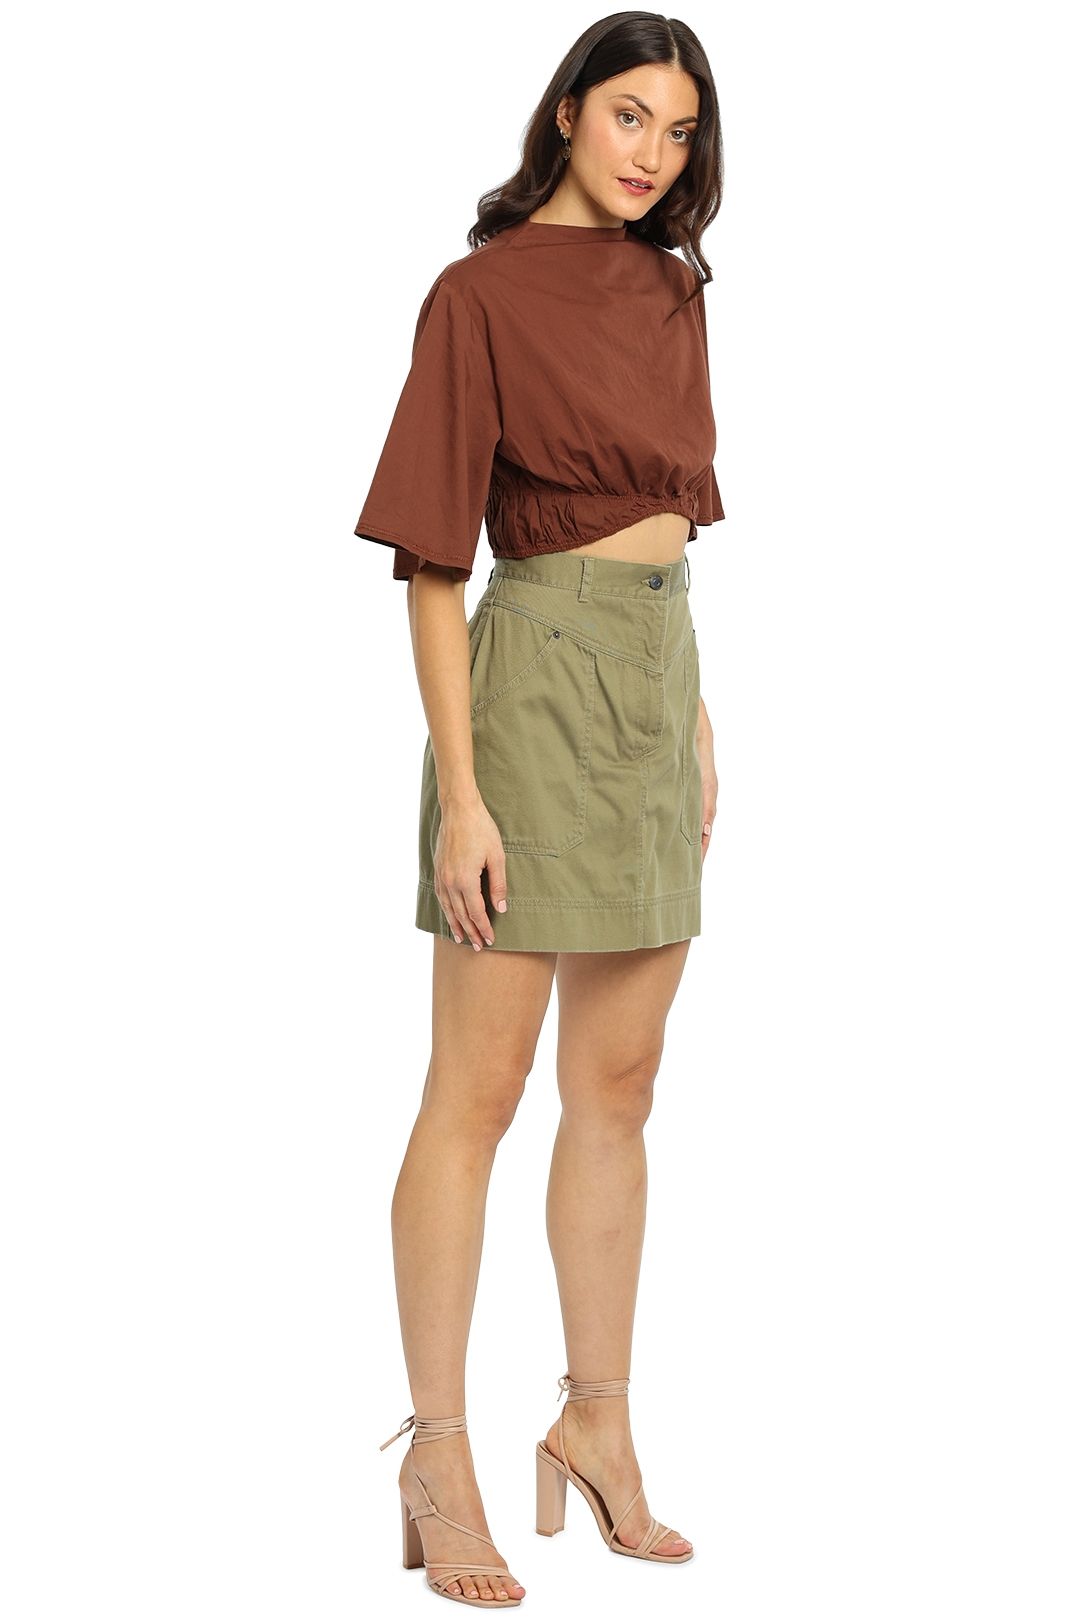 Shona Joy Chiara Mini Skirt Olive Green